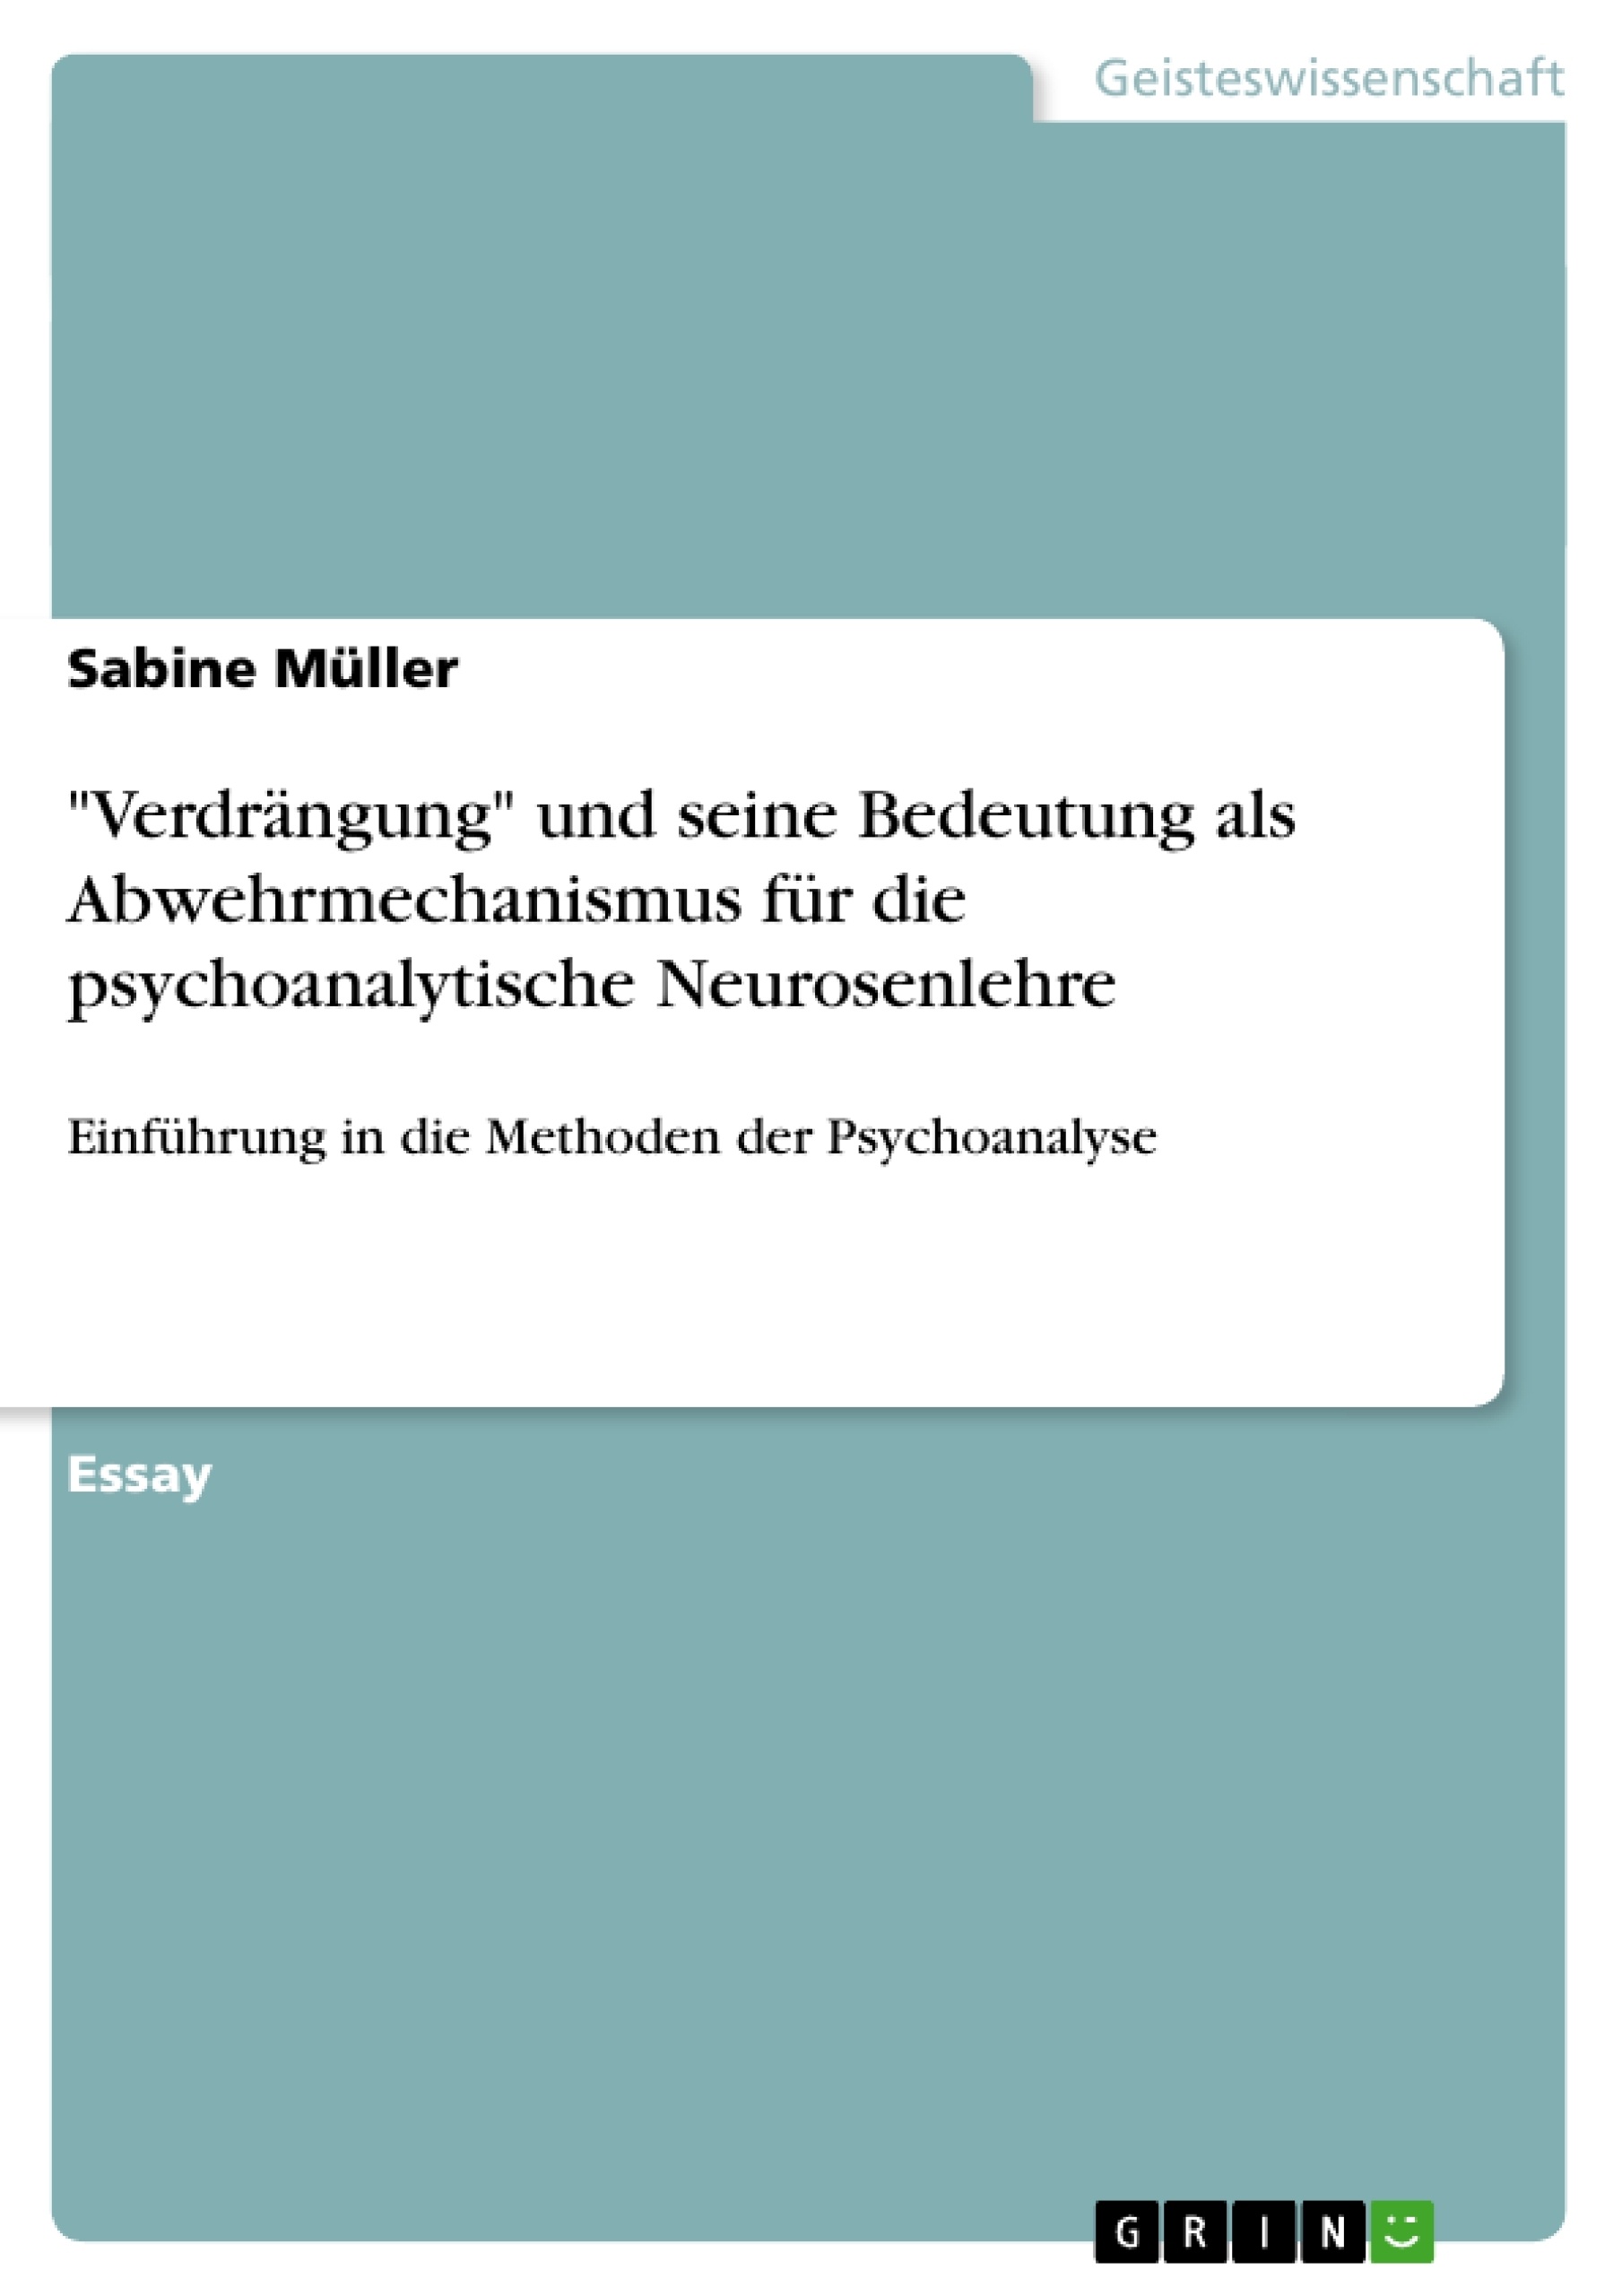 Título: "Verdrängung" und seine Bedeutung als Abwehrmechanismus  für die psychoanalytische Neurosenlehre